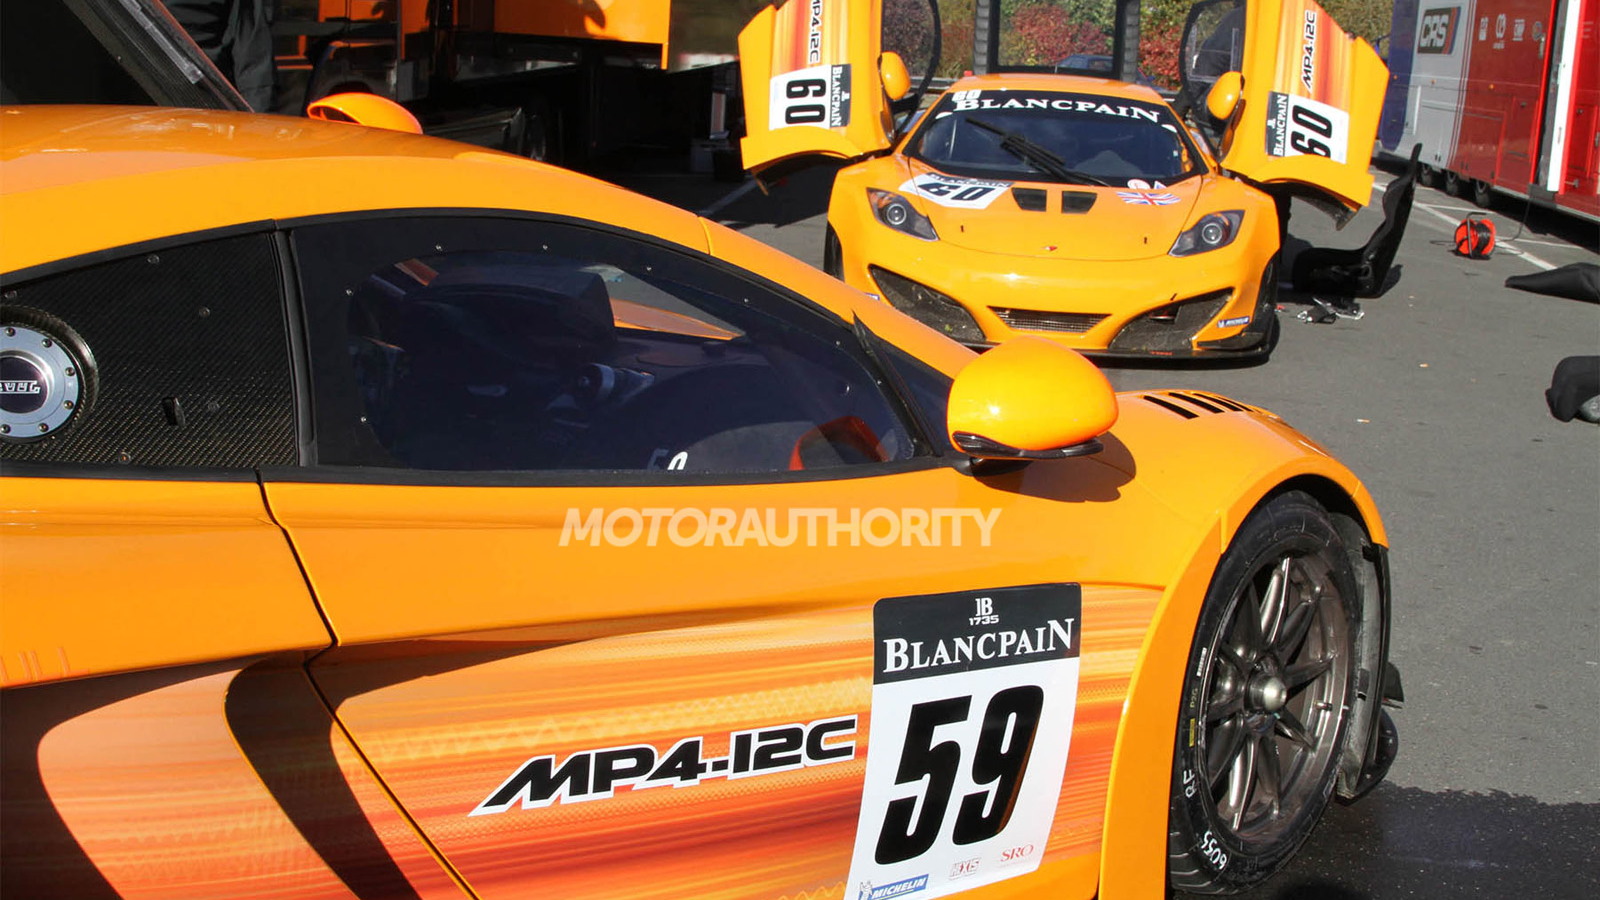 McLaren MP4-12C GT3 race car at the Nurburgring